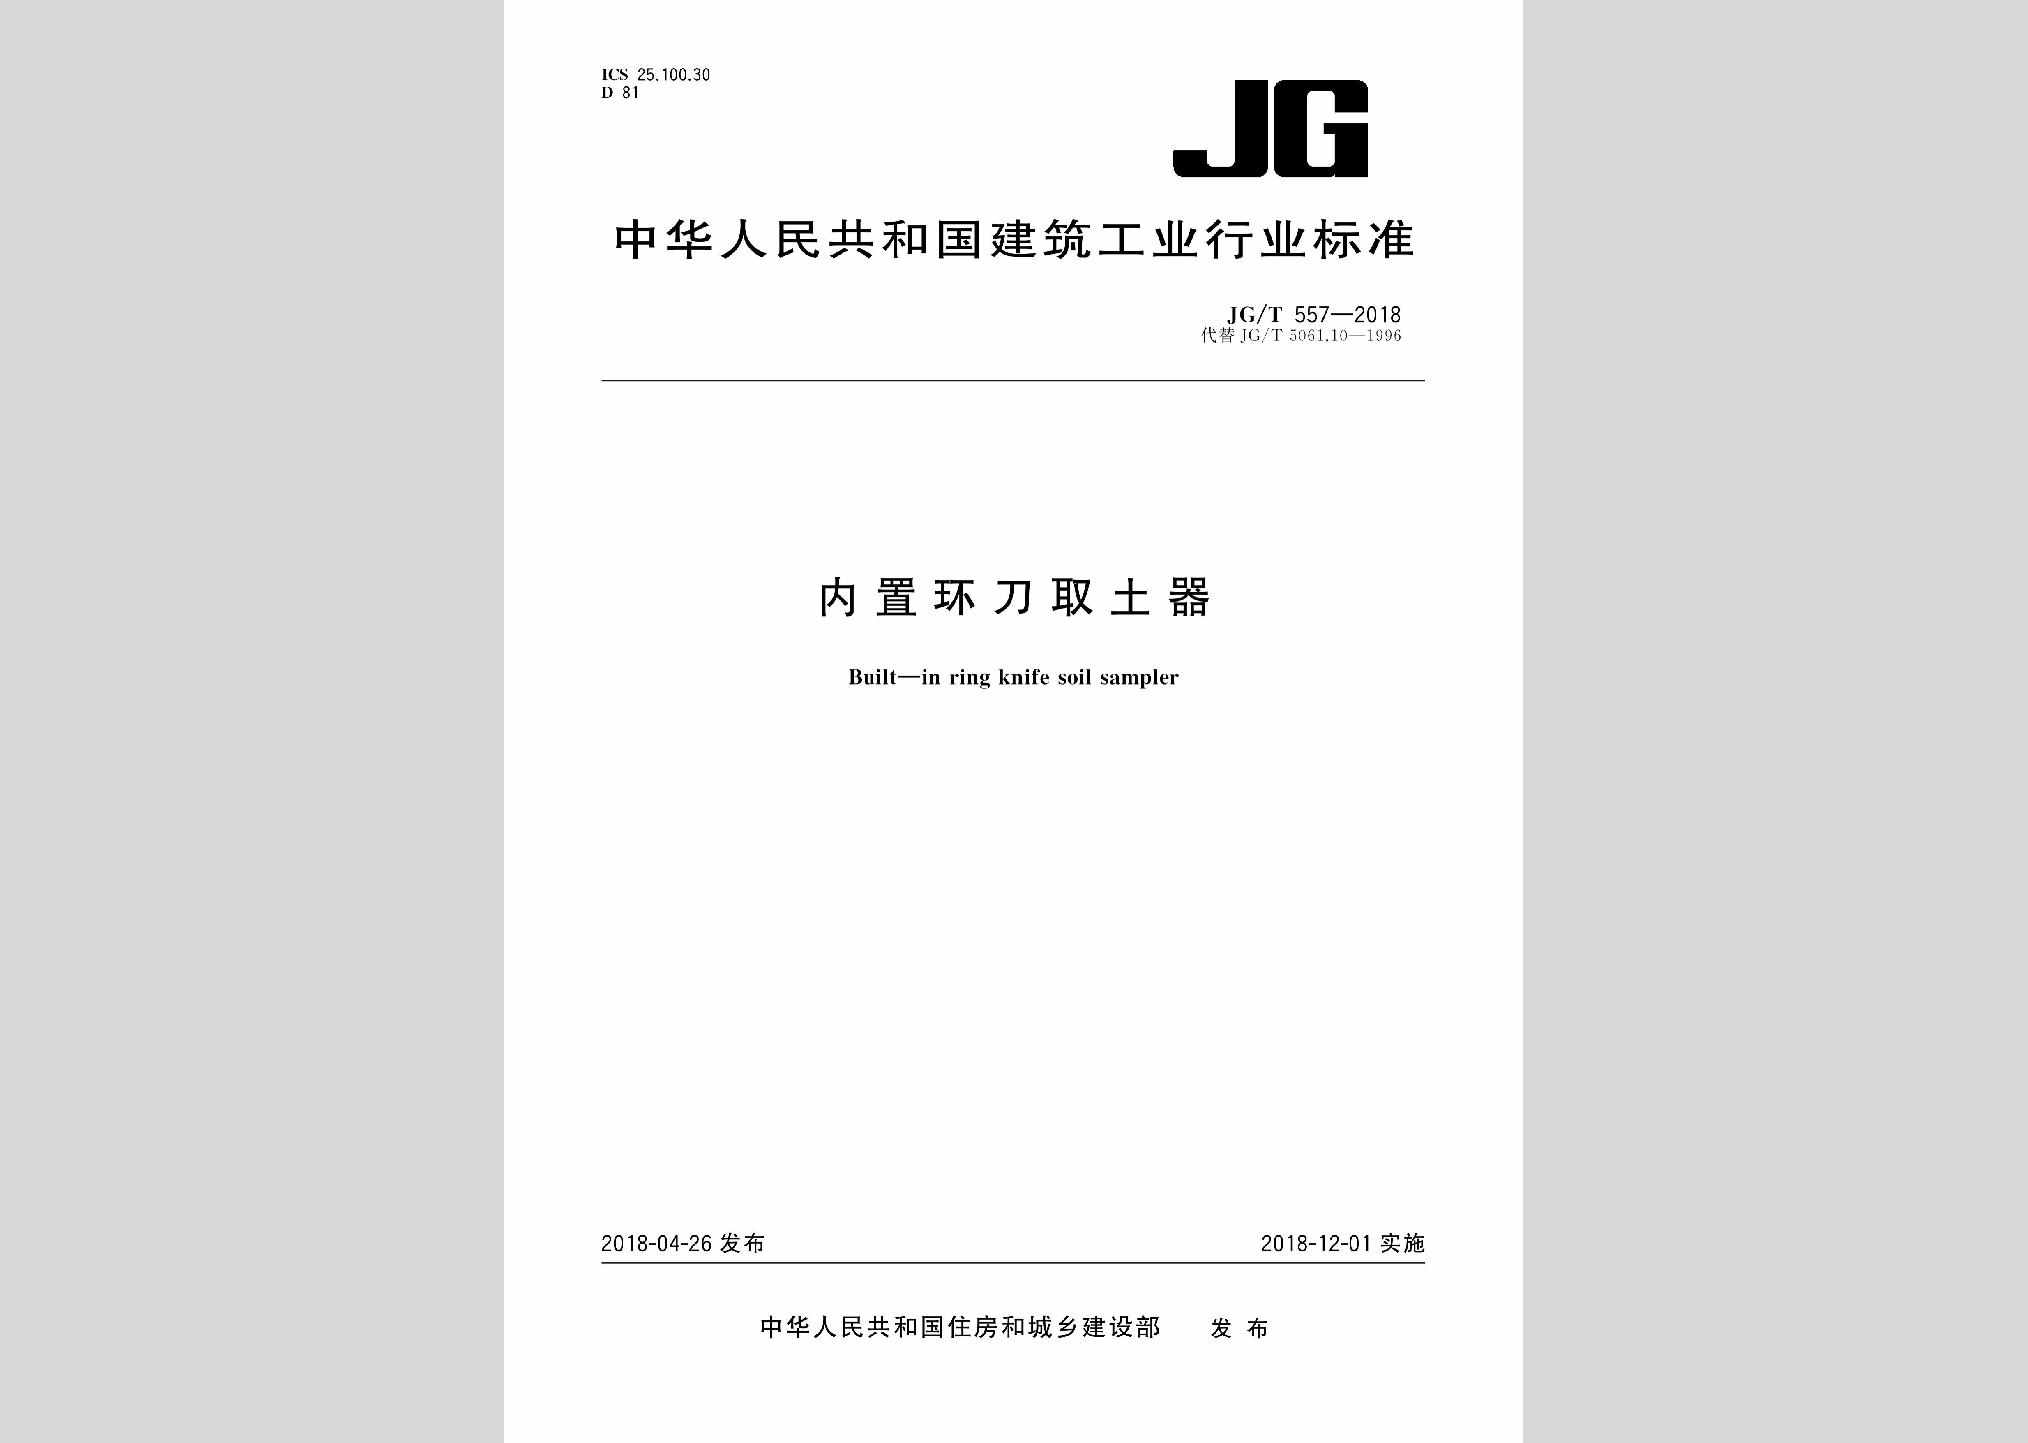 JG/T557-2018：内置环刀取土器